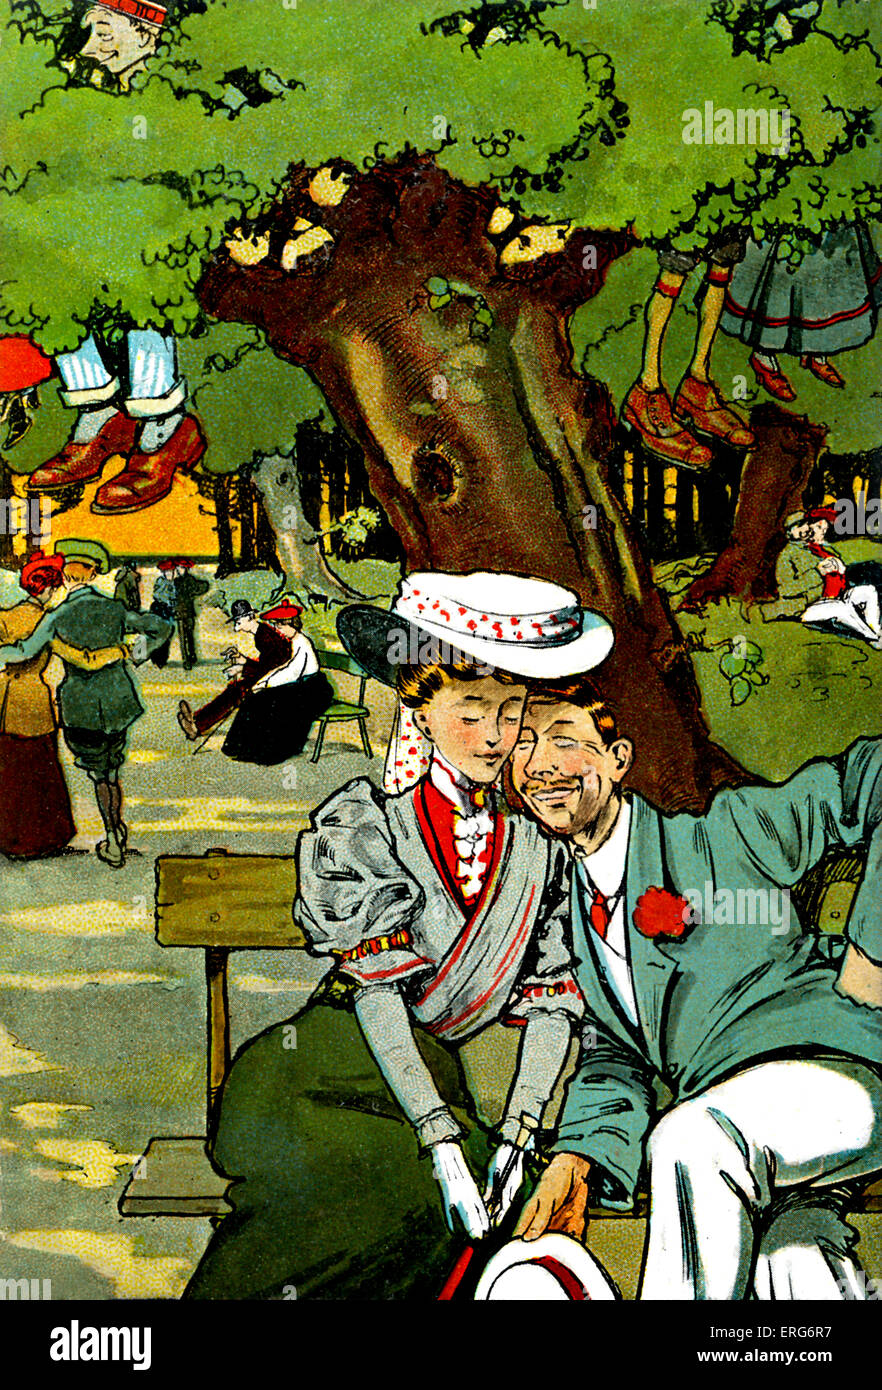 L'amante di camminare a Newbridge. 1907. Cartolina umoristica. Disegno di Tony Sarg, (American Illustrator, 1880 - 1942). Foto Stock